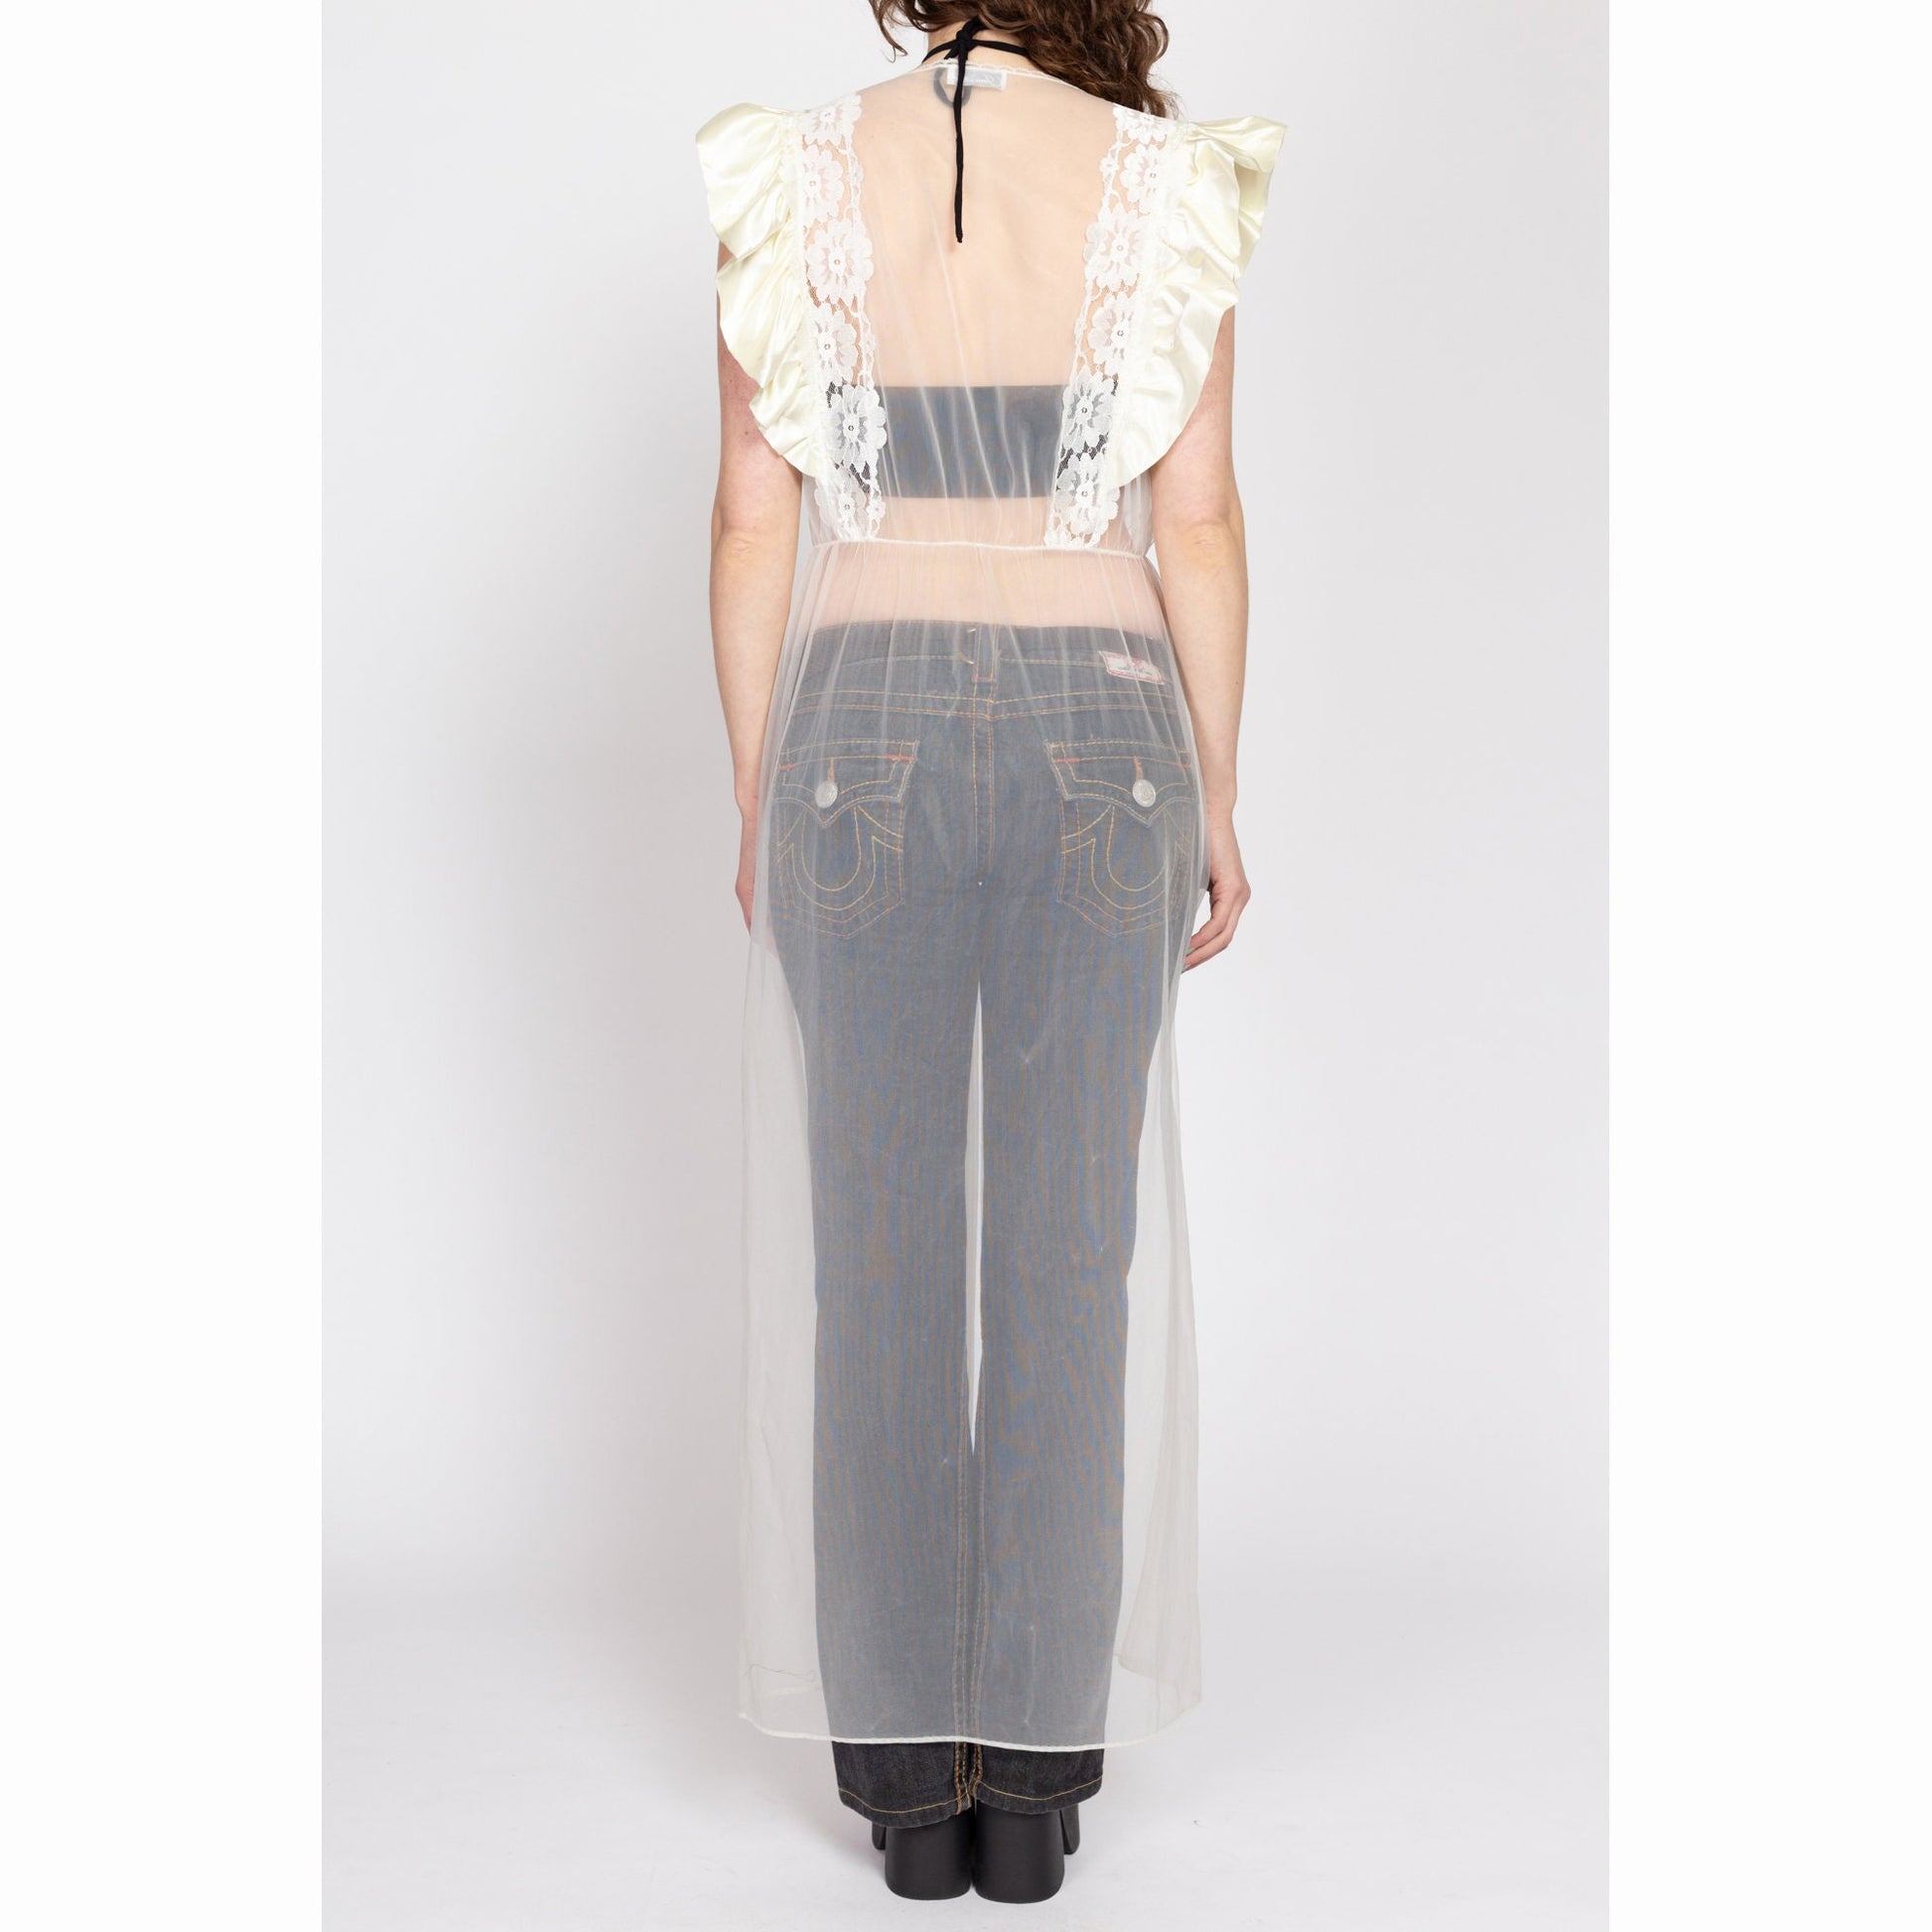 Med-Lrg 80s Sheer White Ruffled Trim Peignoir | Vintage Lace Satin Boho Loungewear Lingerie Robe